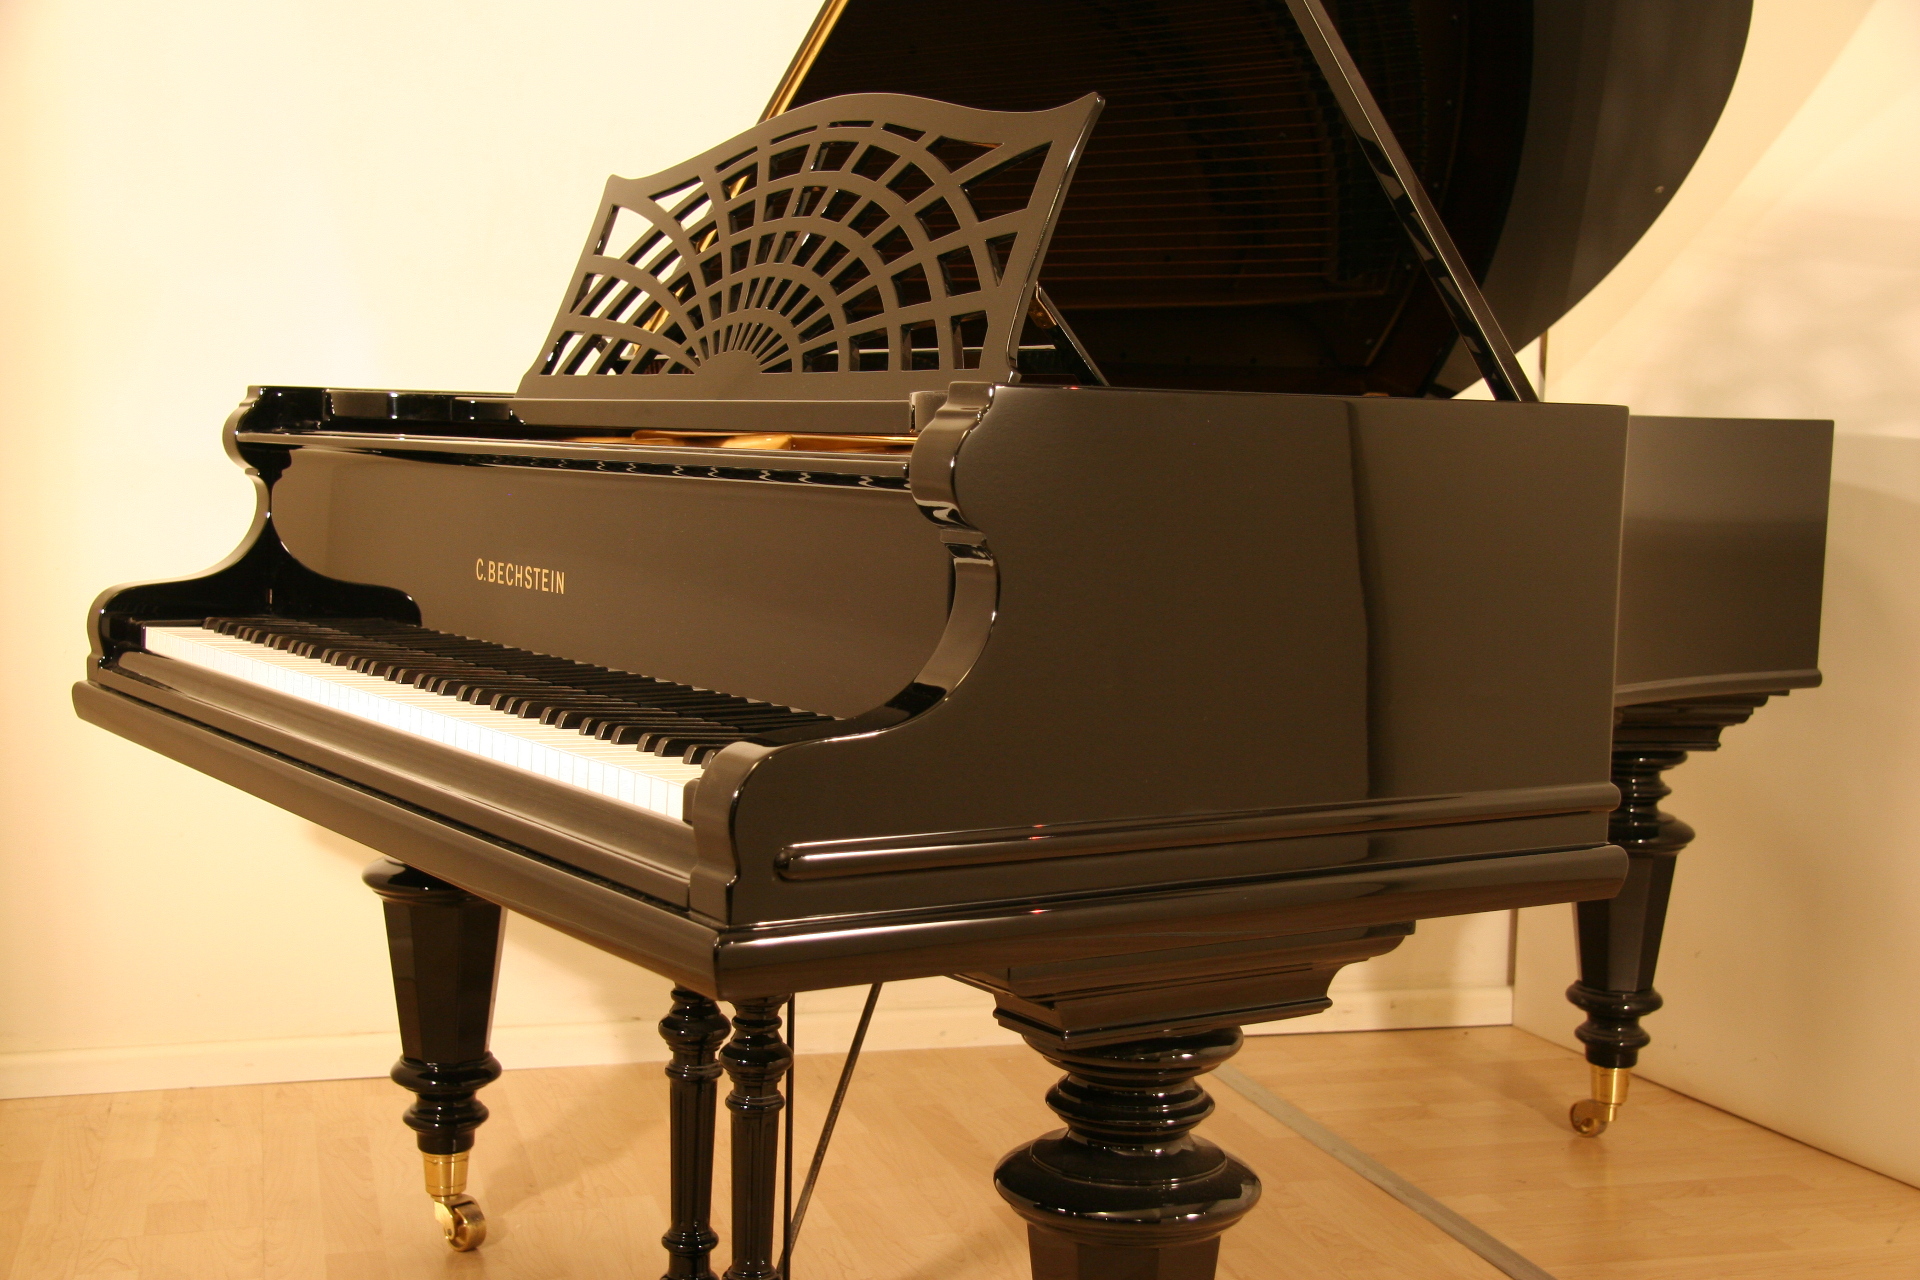 Marken Klavier und Piano - Beispiel C. Bechstein